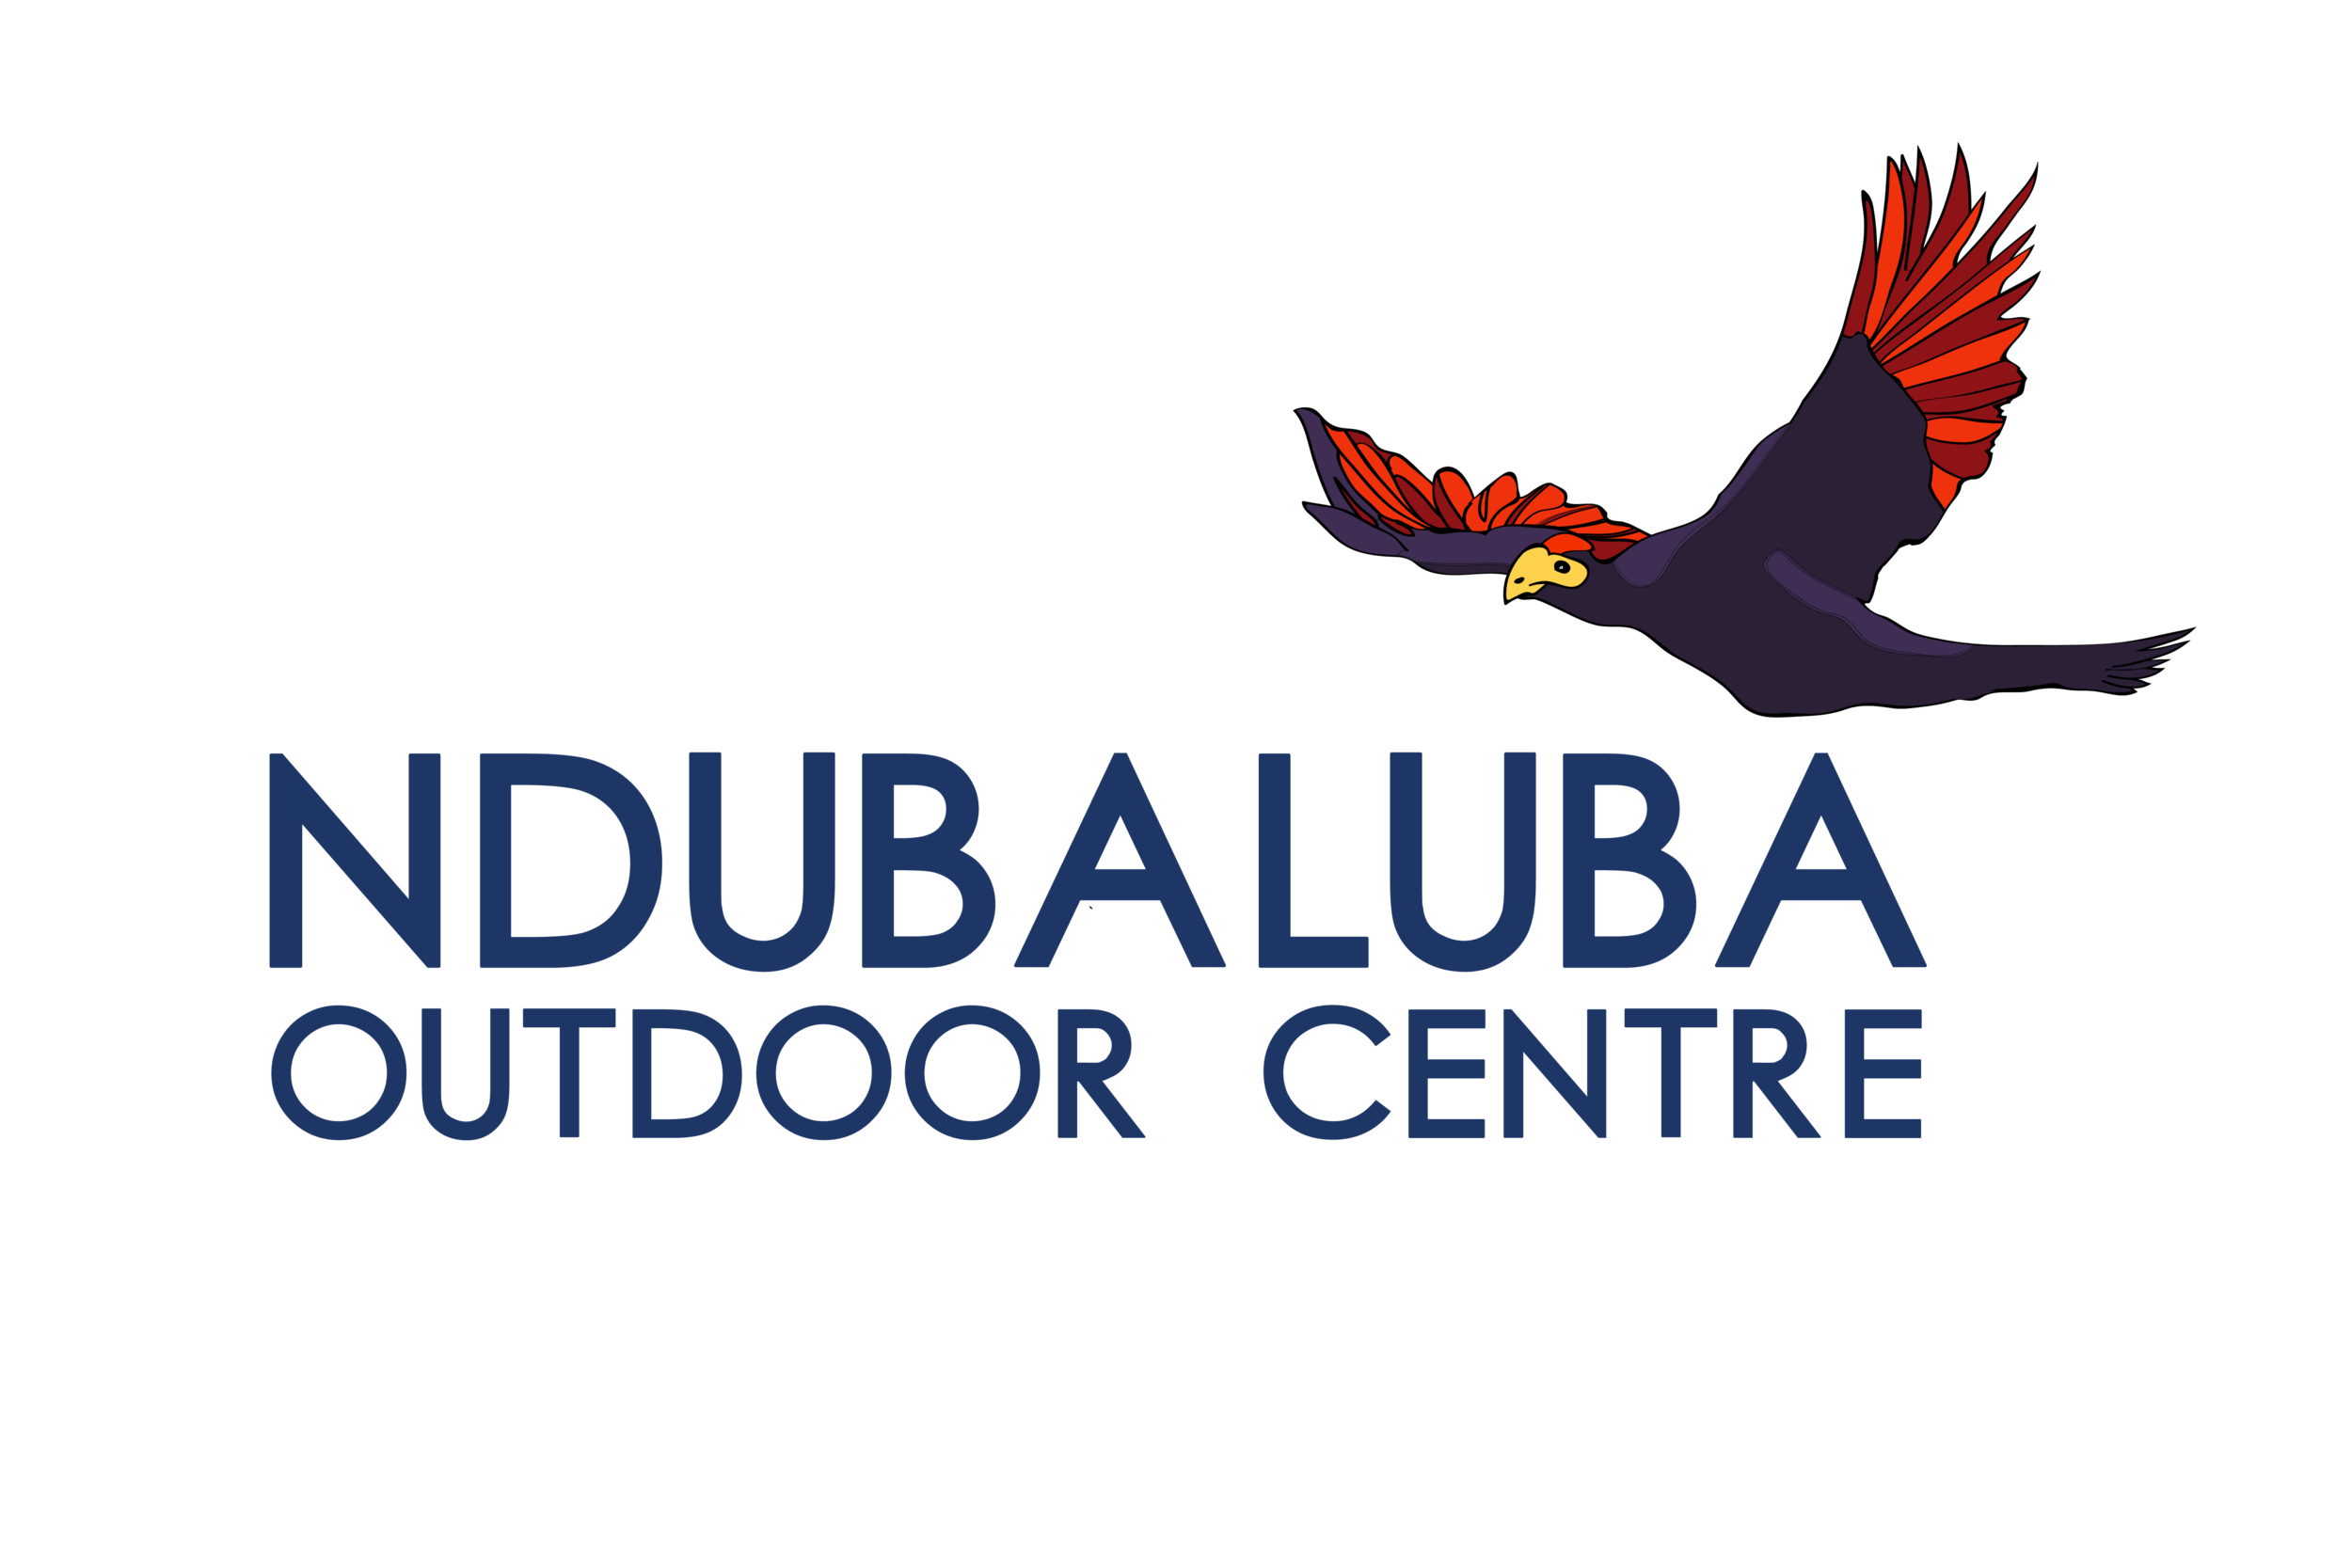 Ndubaluba Outdoor Centre